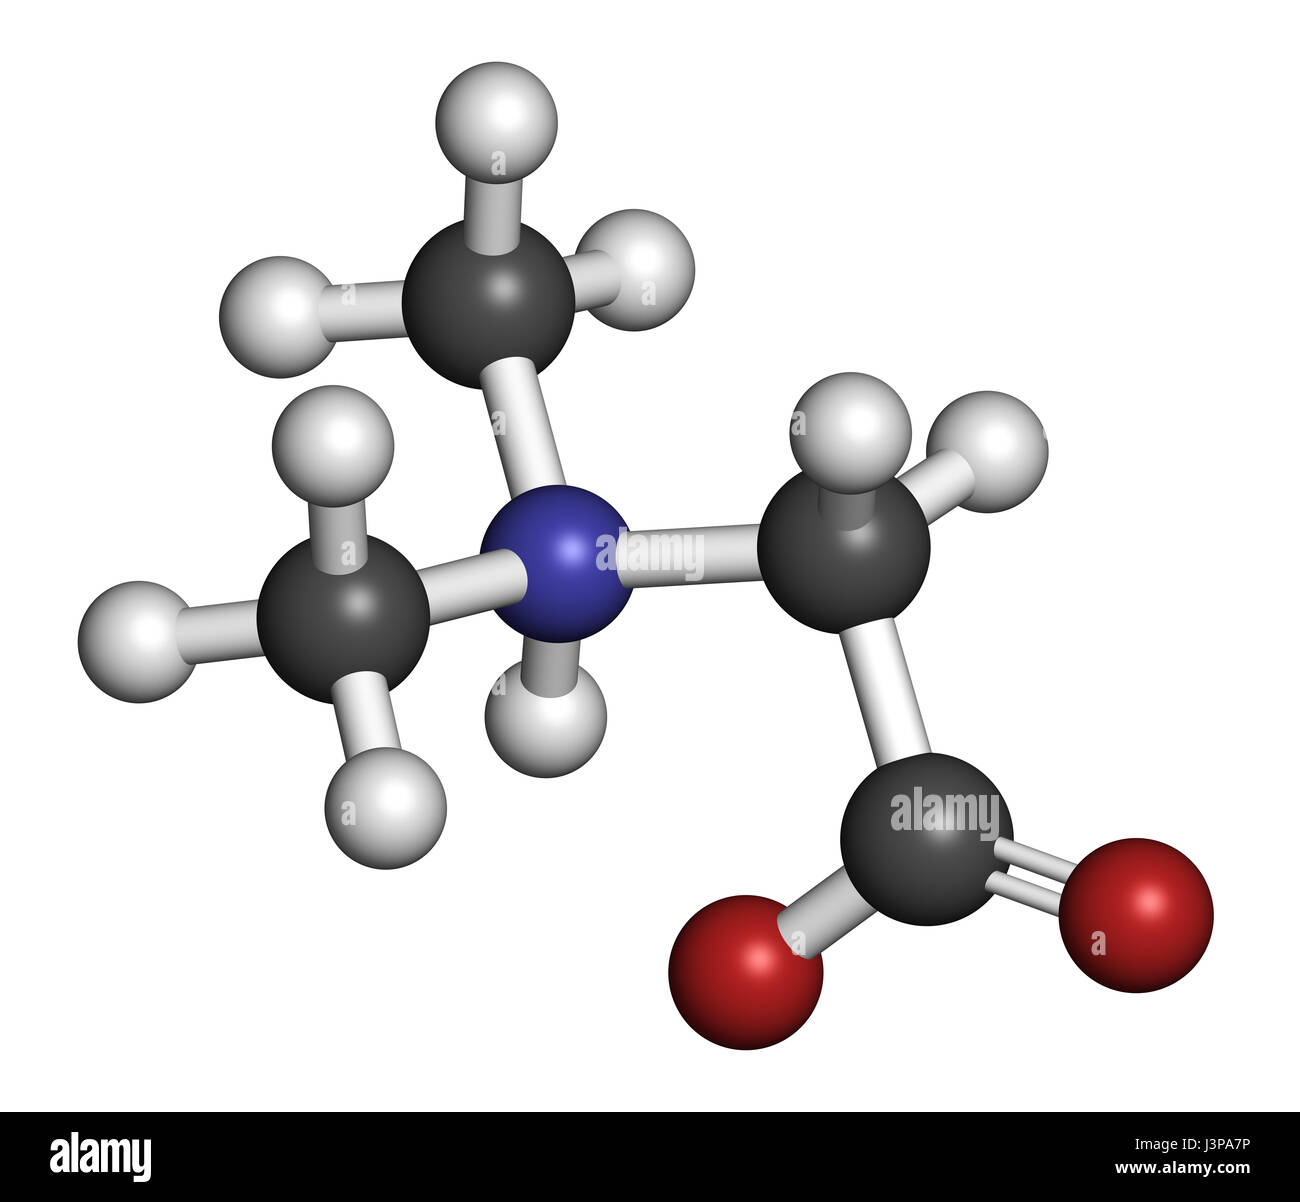 Dimethylglycin (DMG)-Molekül. Methylierte Ableitung von Glycin, in leistungssteigernde Nahrungsergänzungsmittel verwendet. Atome sind als Sphe dargestellt. Stockfoto